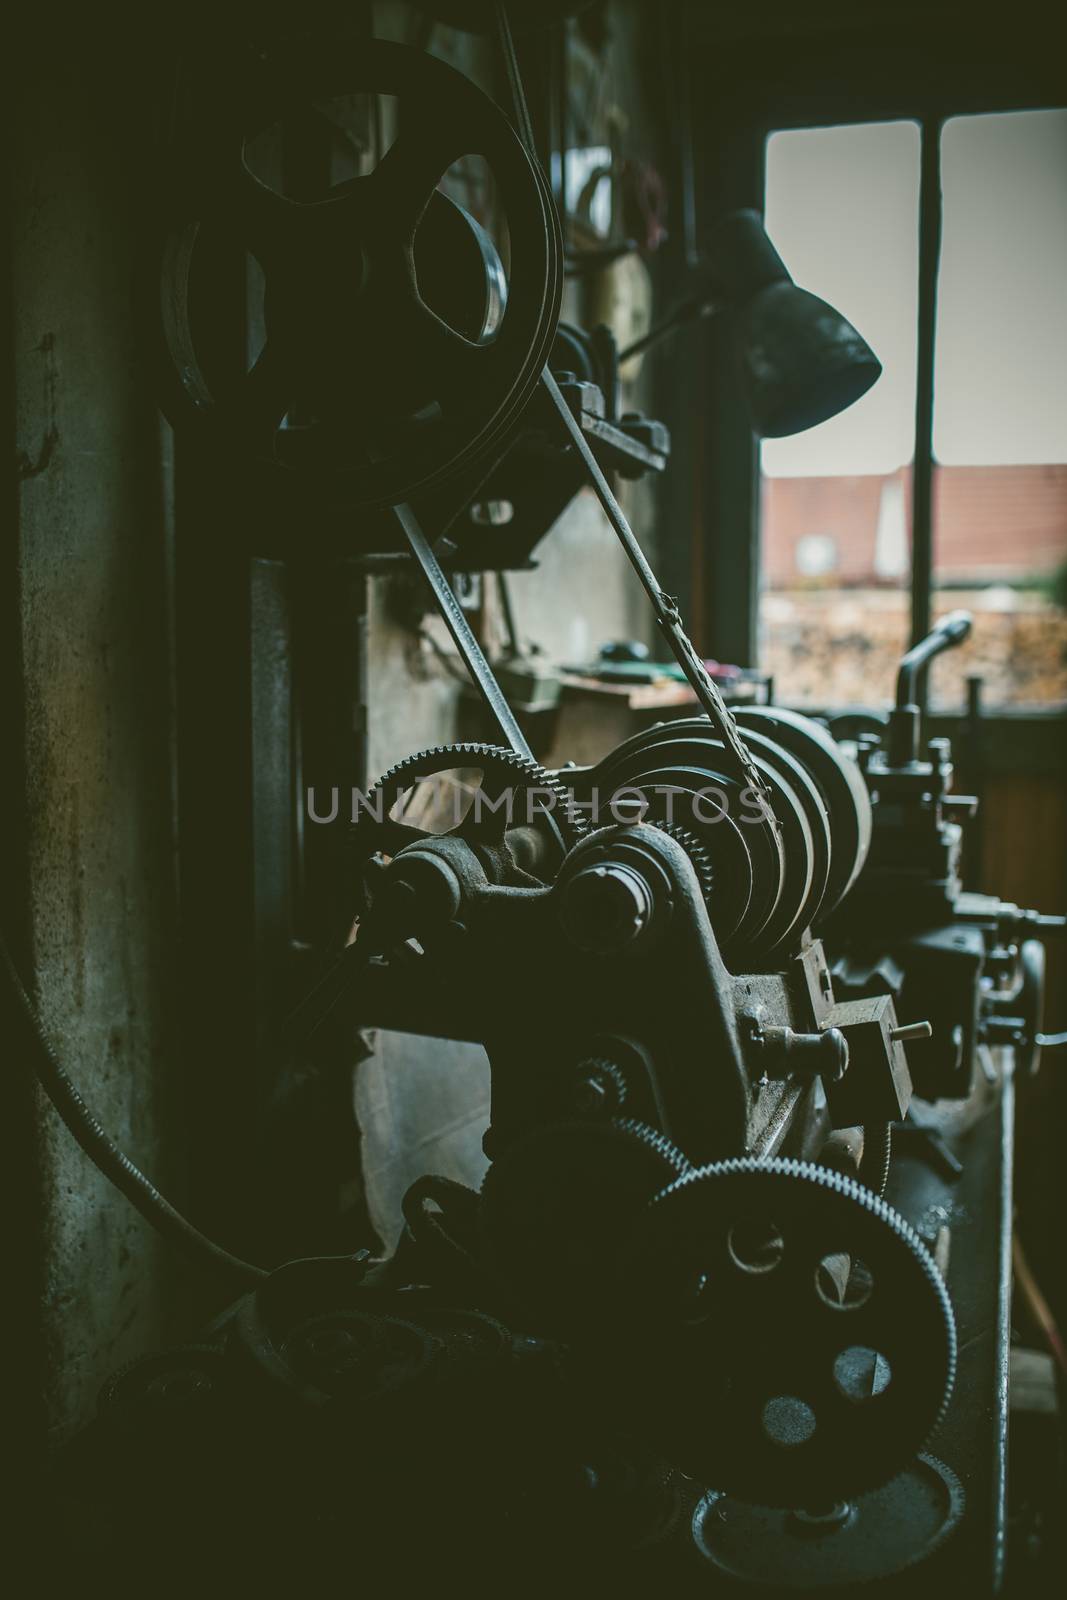 vintage metal turning machine in workshop